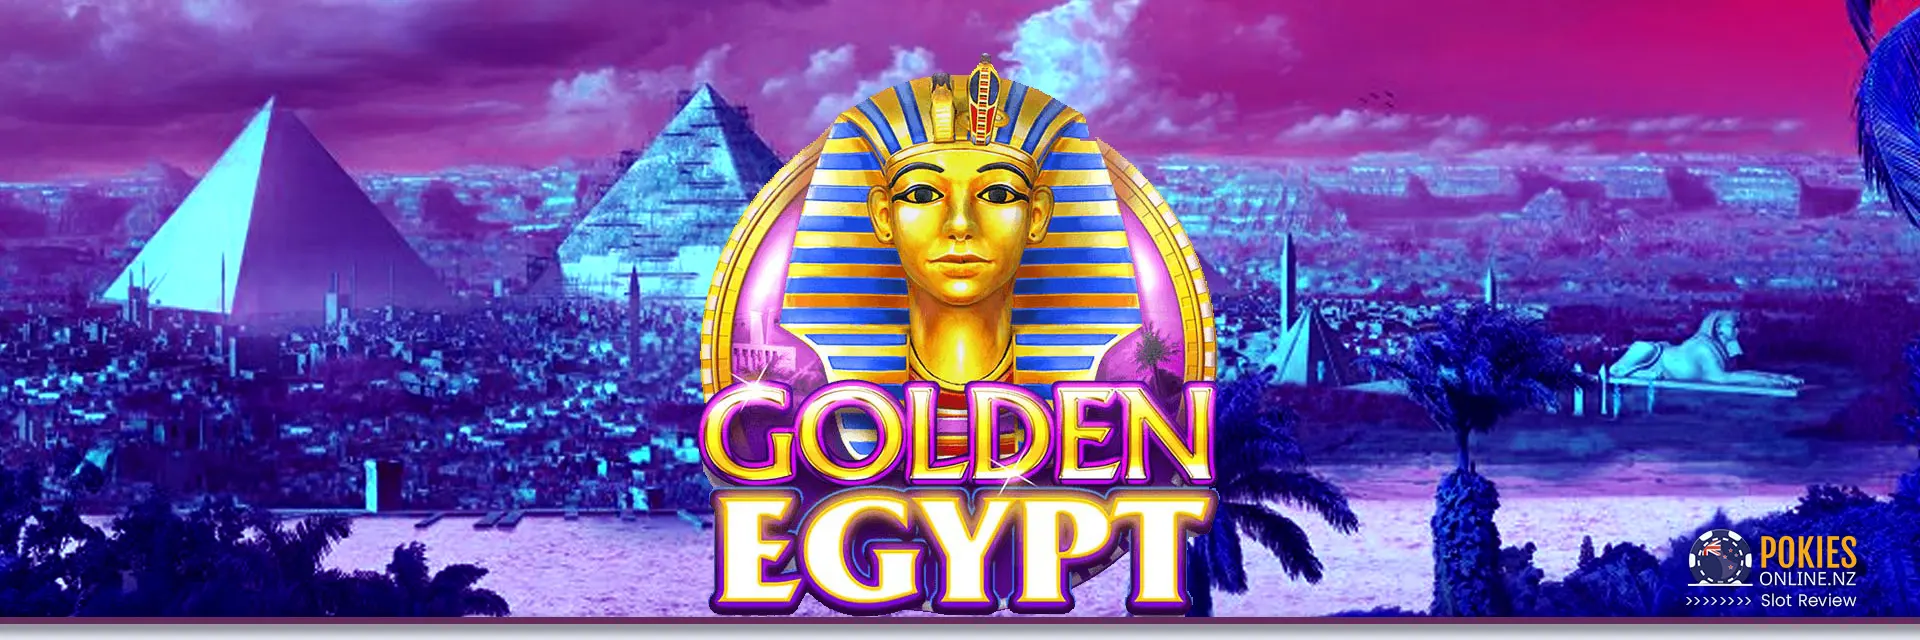 Golden Egypt slot banner